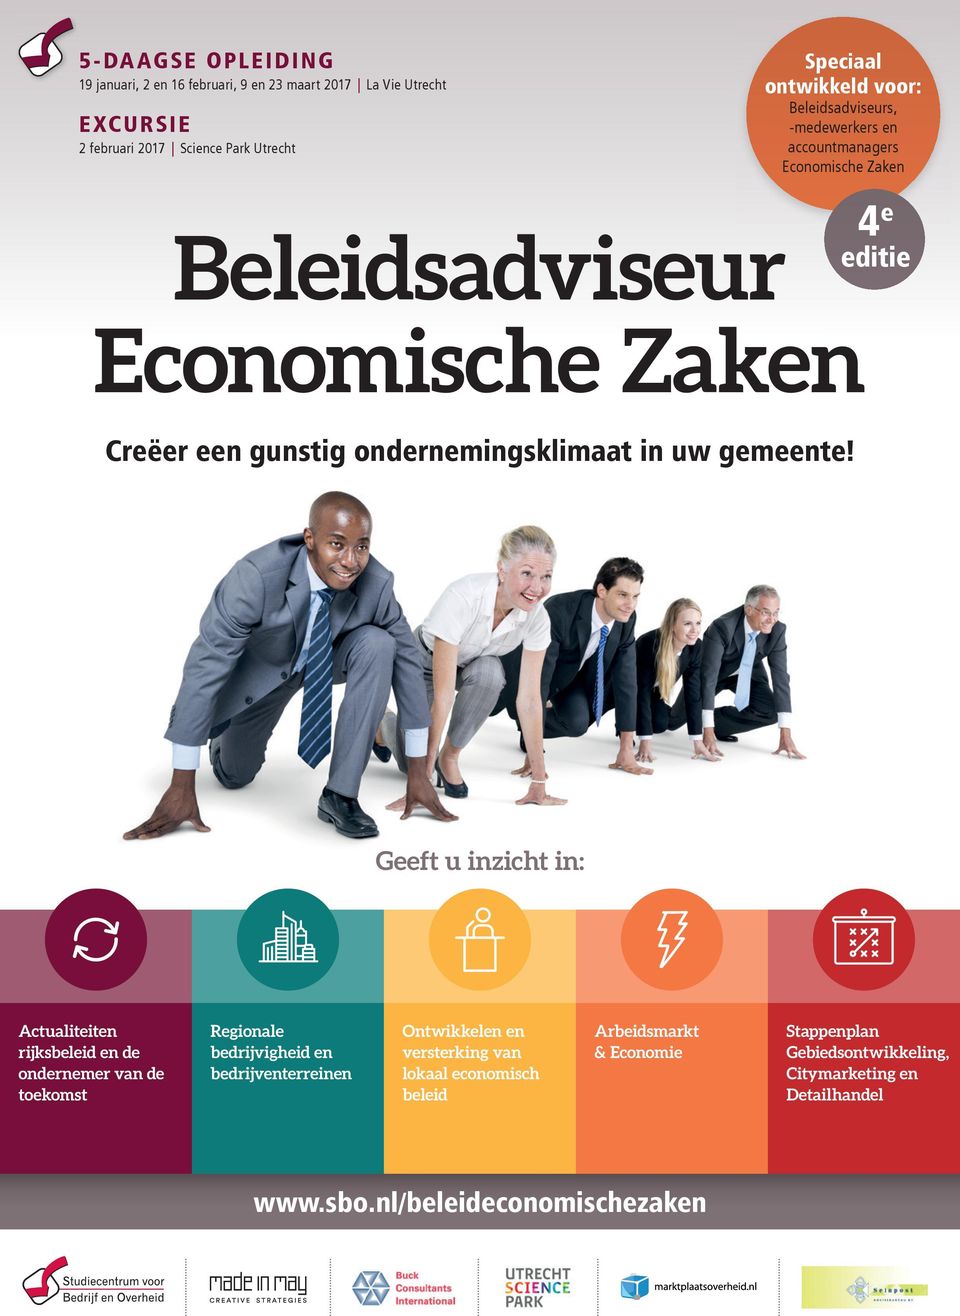 4 e editie Geeft u inzicht in: Actualiteiten rijksbeleid en de ondernemer van de toekomst Regionale bedrijvigheid en bedrijventerreinen